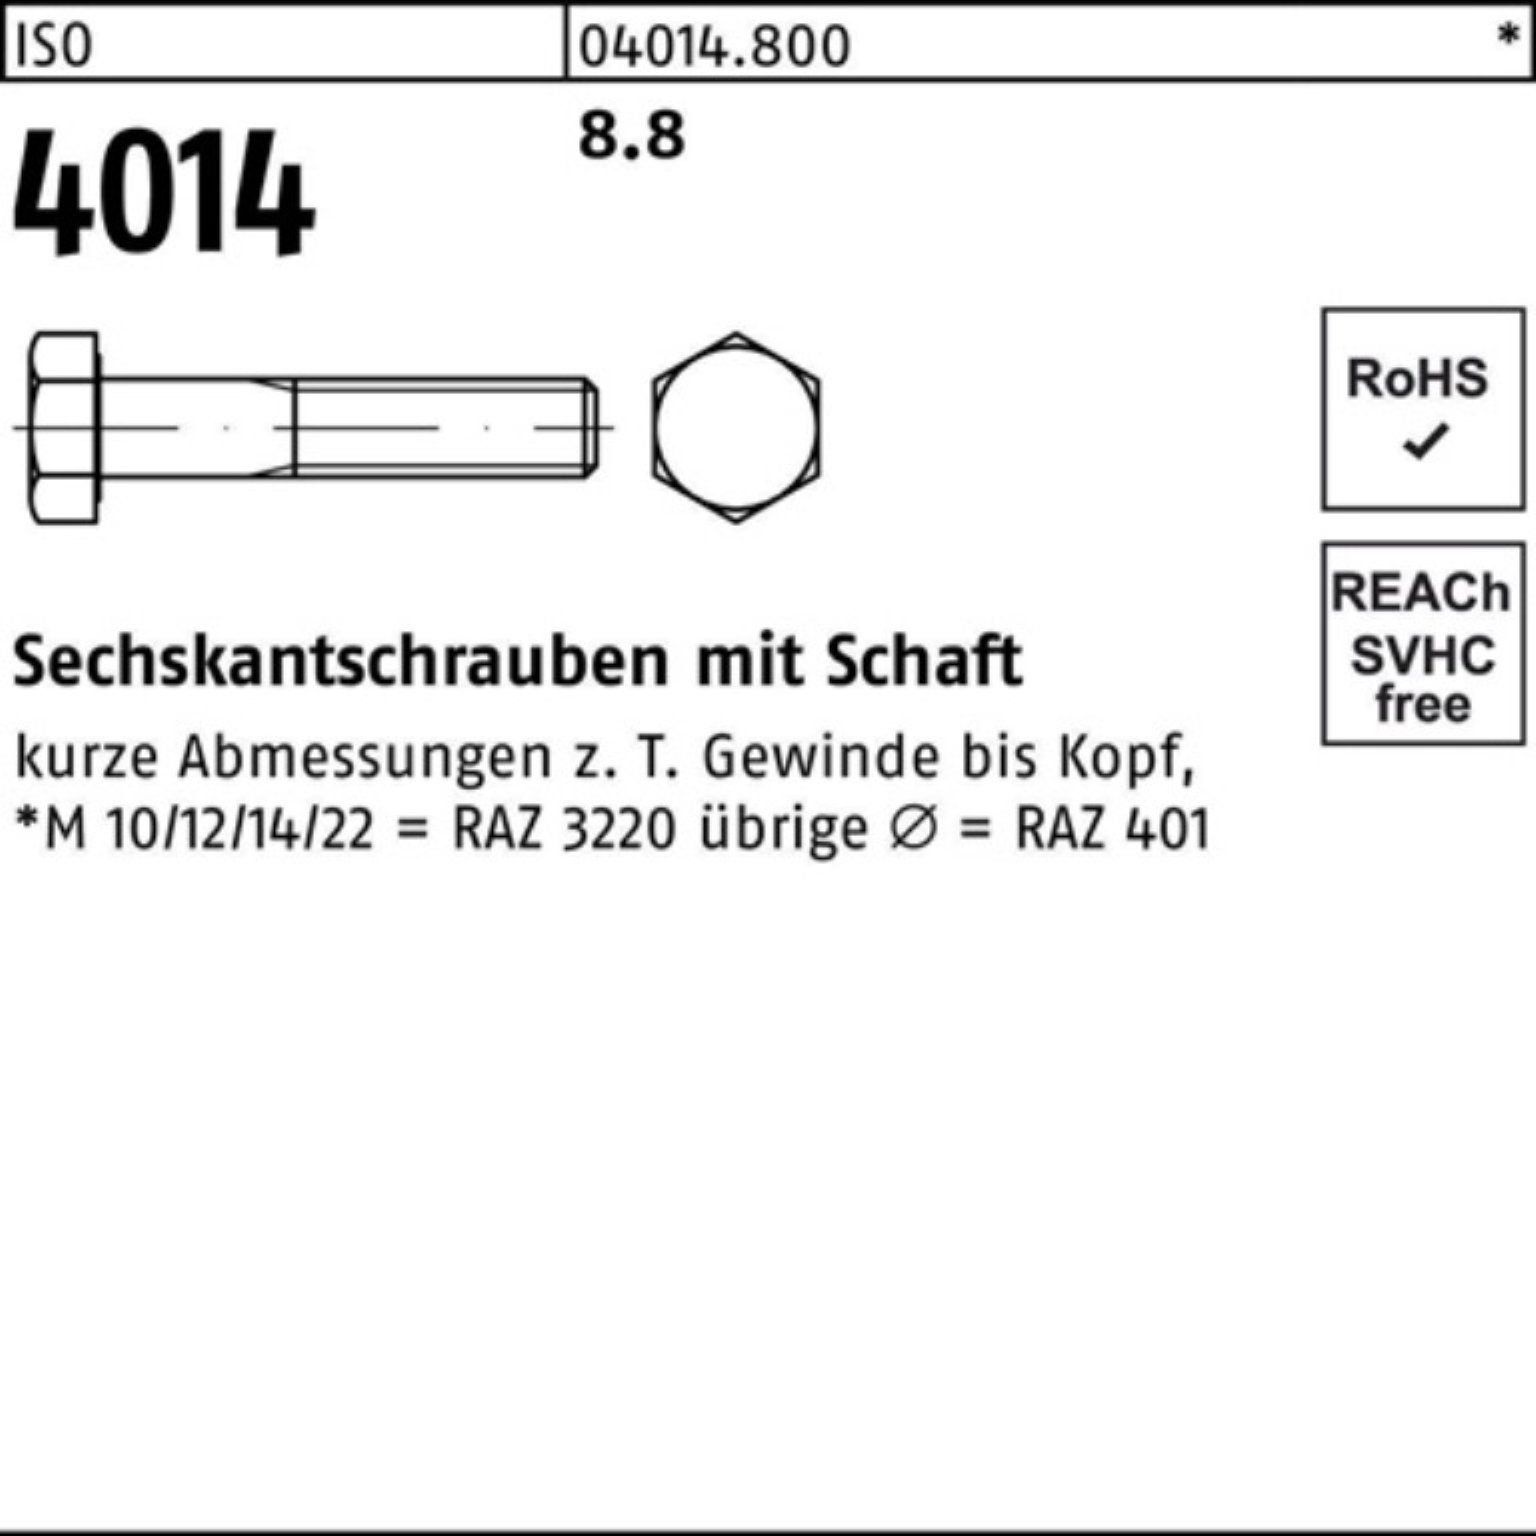 Bufab Sechskantschraube 100er Pack 8.8 Schaft Stück Sechskantschraube 1 310 M36x 4014 ISO ISO